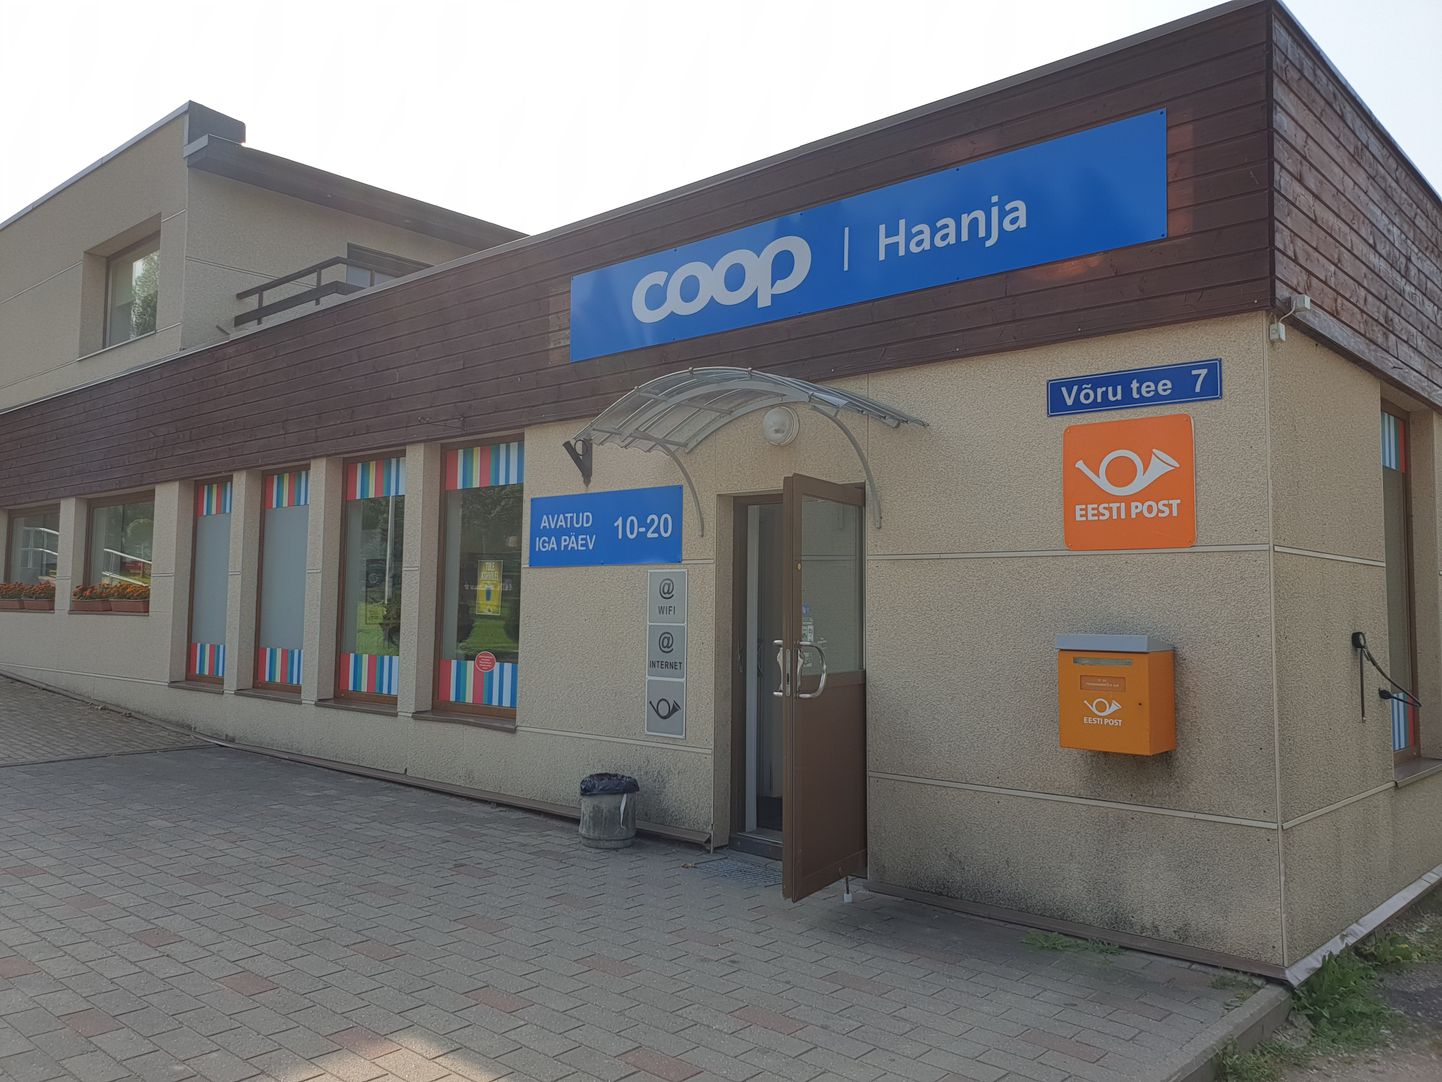 Преступник ограбил магазин в Хаанья.